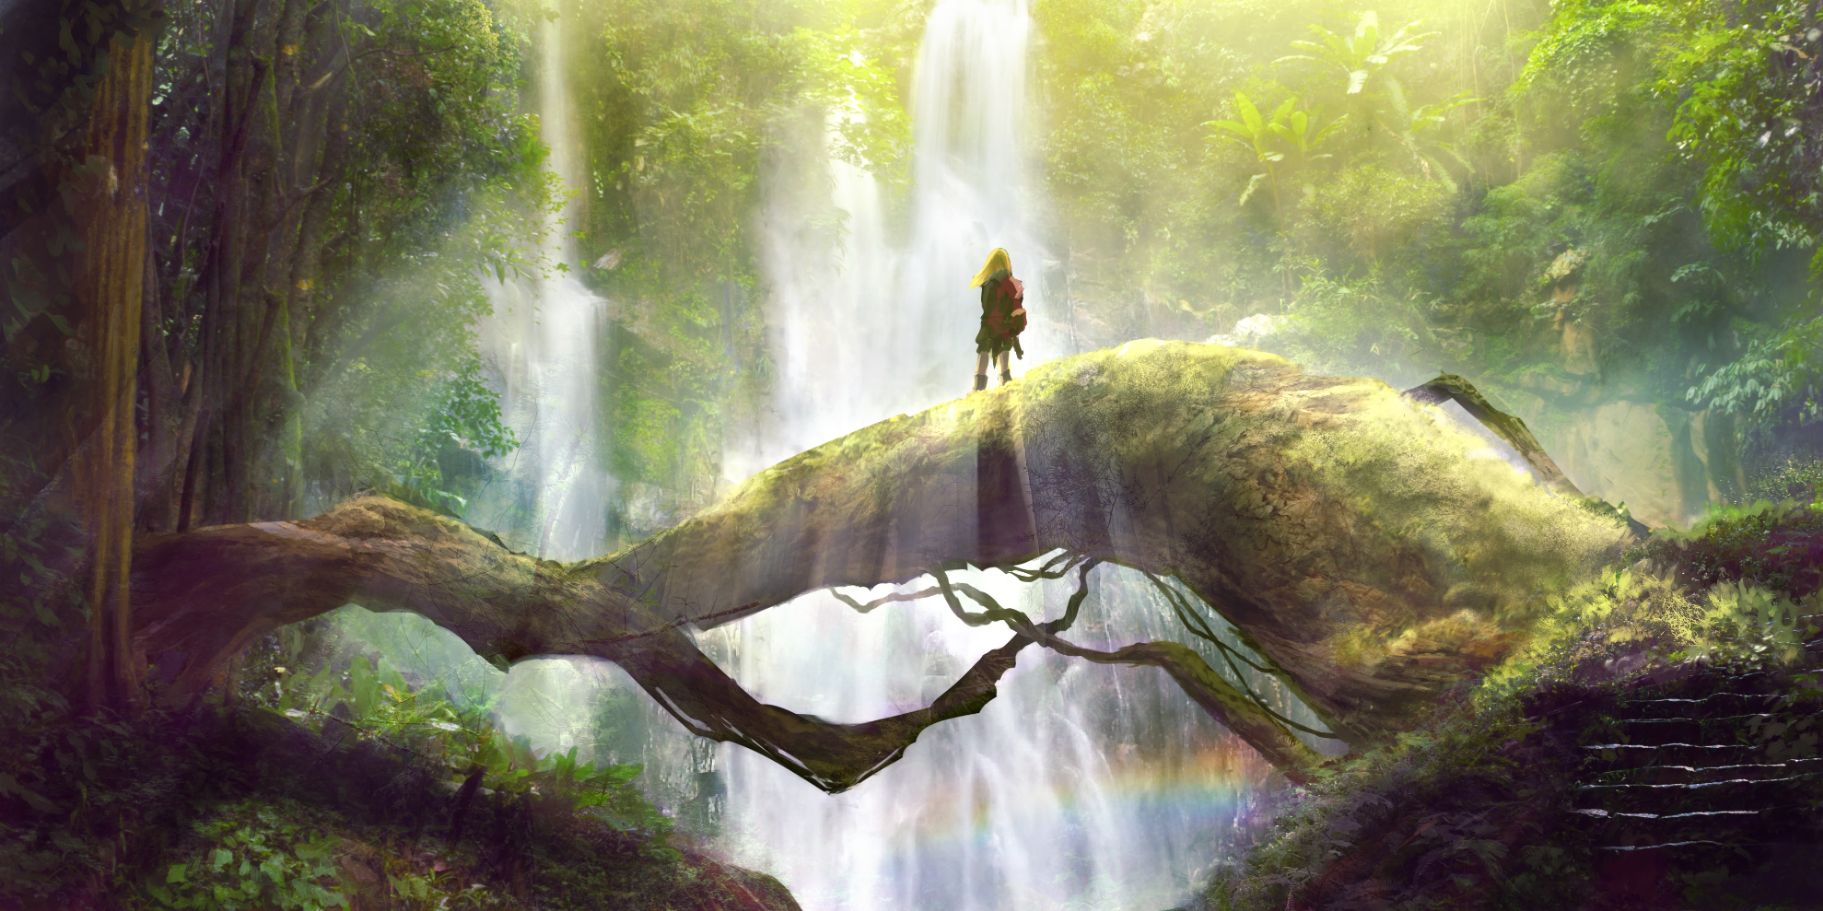 Скачать обои бесплатно Аниме, Природа, Радуга, Водопад, Лес, Оригинал картинка на рабочий стол ПК